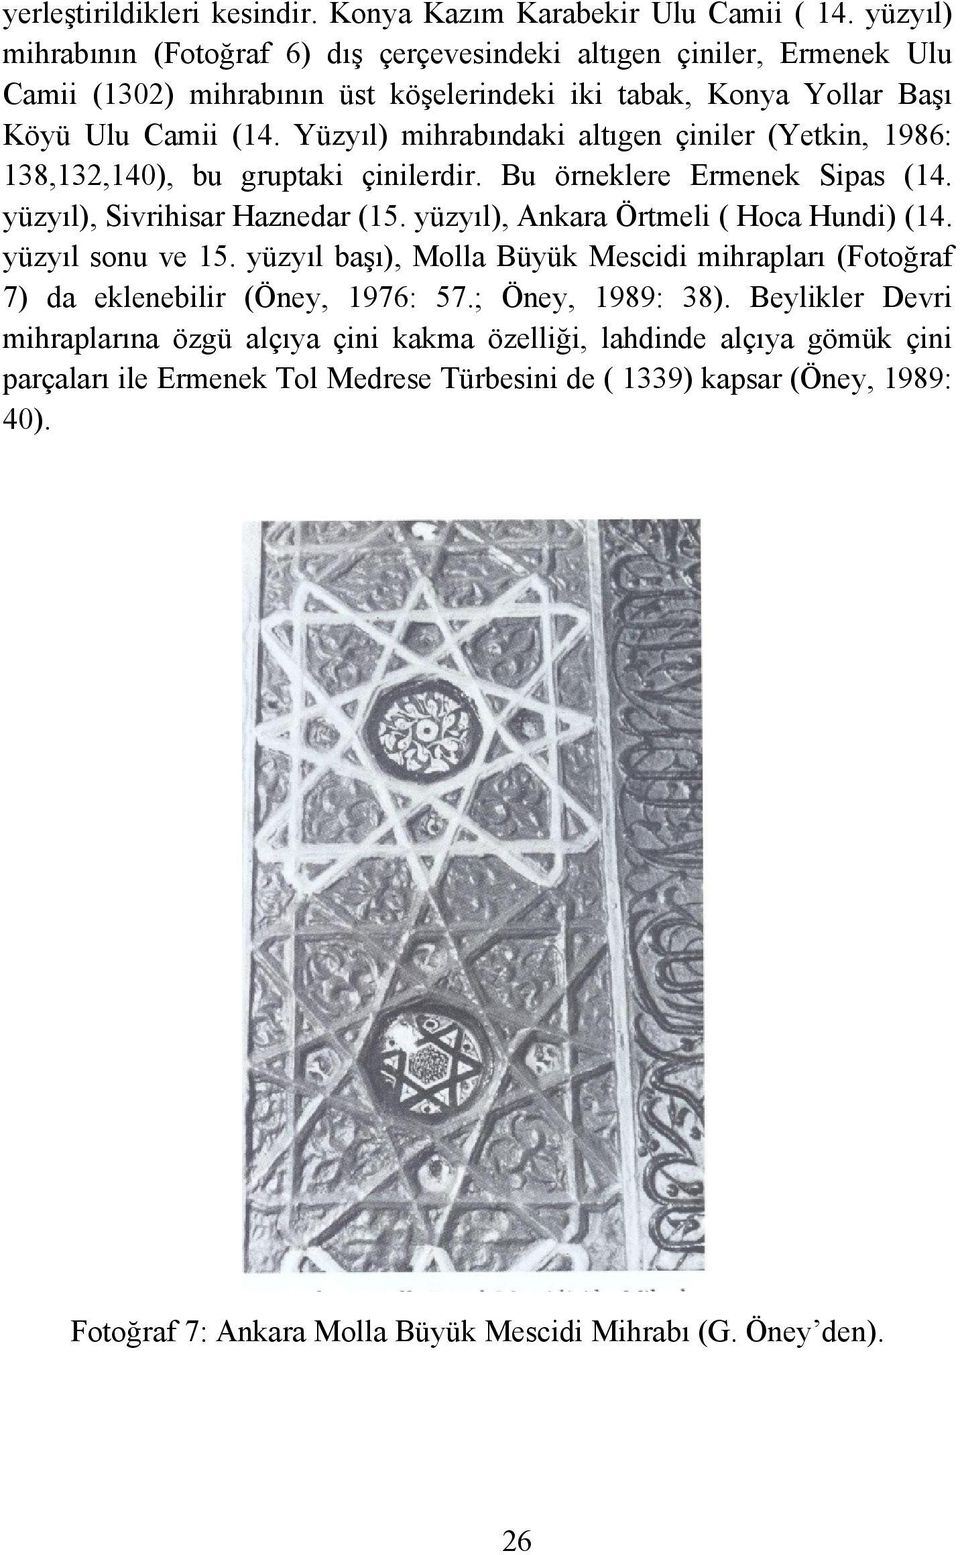 Yüzyıl) mihrabındaki altıgen çiniler (Yetkin, 1986: 138,132,140), bu gruptaki çinilerdir. Bu örneklere Ermenek Sipas (14. yüzyıl), Sivrihisar Haznedar (15. yüzyıl), Ankara Örtmeli ( Hoca Hundi) (14.